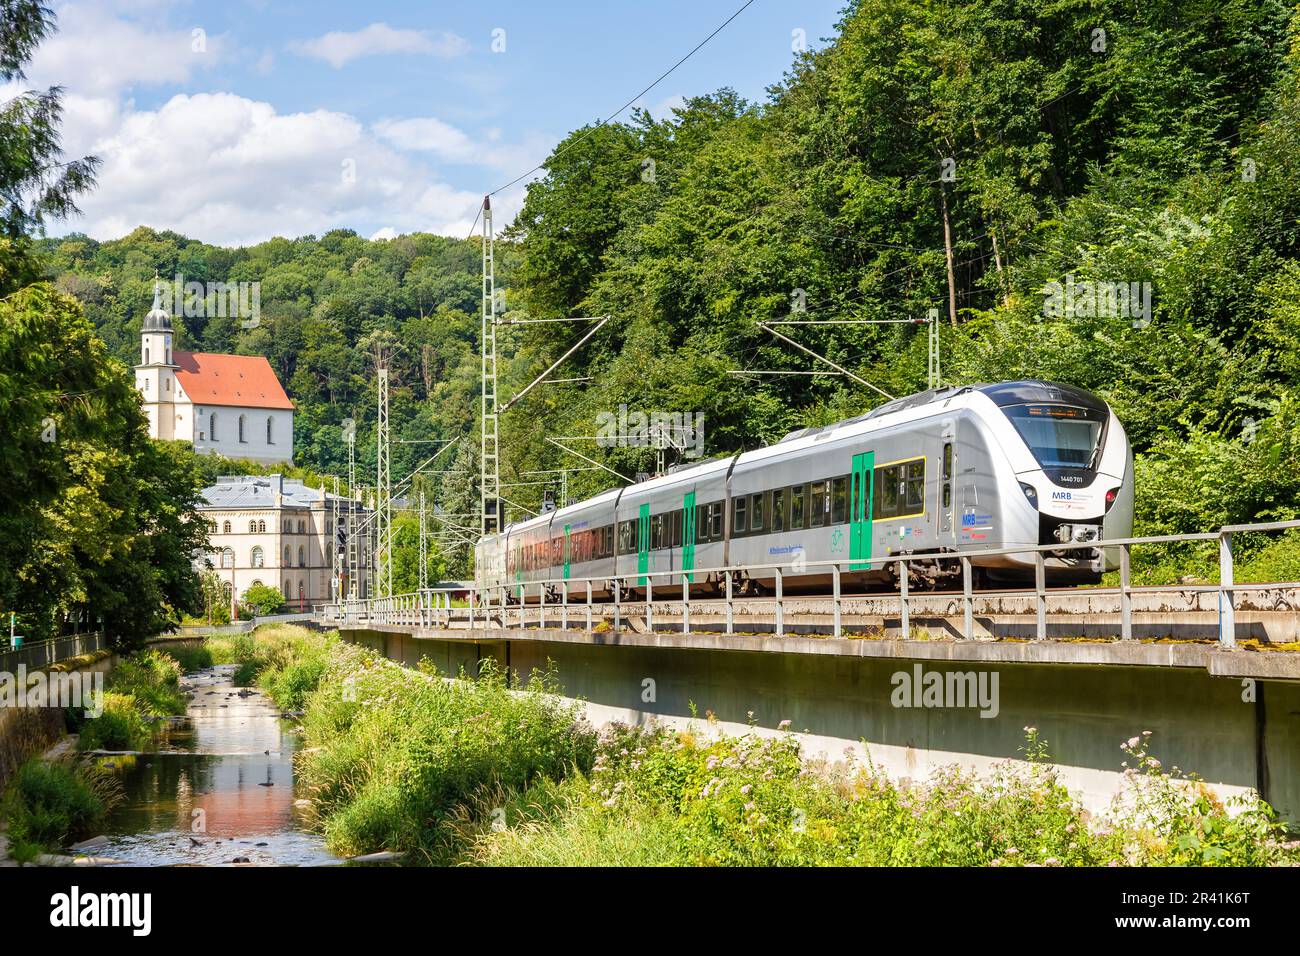 Alstom Coradia Tren regional continental de Mitteldeutsche Regiobahn MRB en Tharandt, Alemania Foto de stock